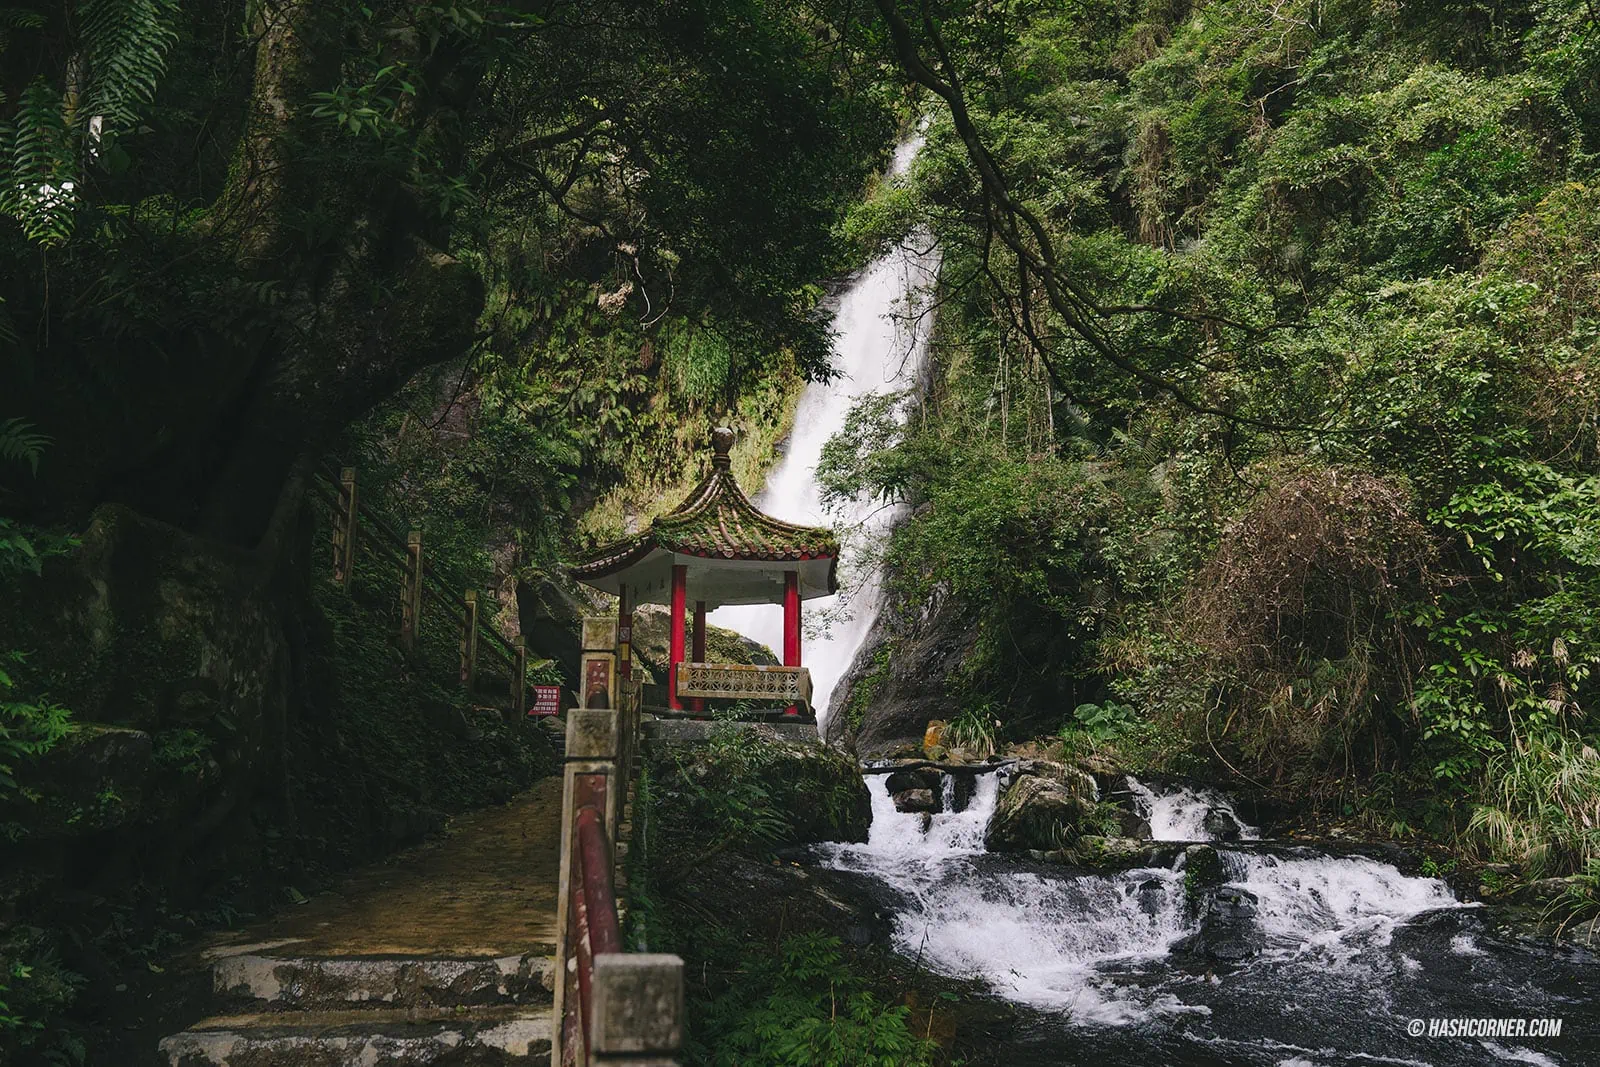 รีวิว อี๋หลาน (Yilan) x ไต้หวัน ขับรถเที่ยวธรรมชาติและไท่ผิงซาน [Taiwan Road Trip EP.2]